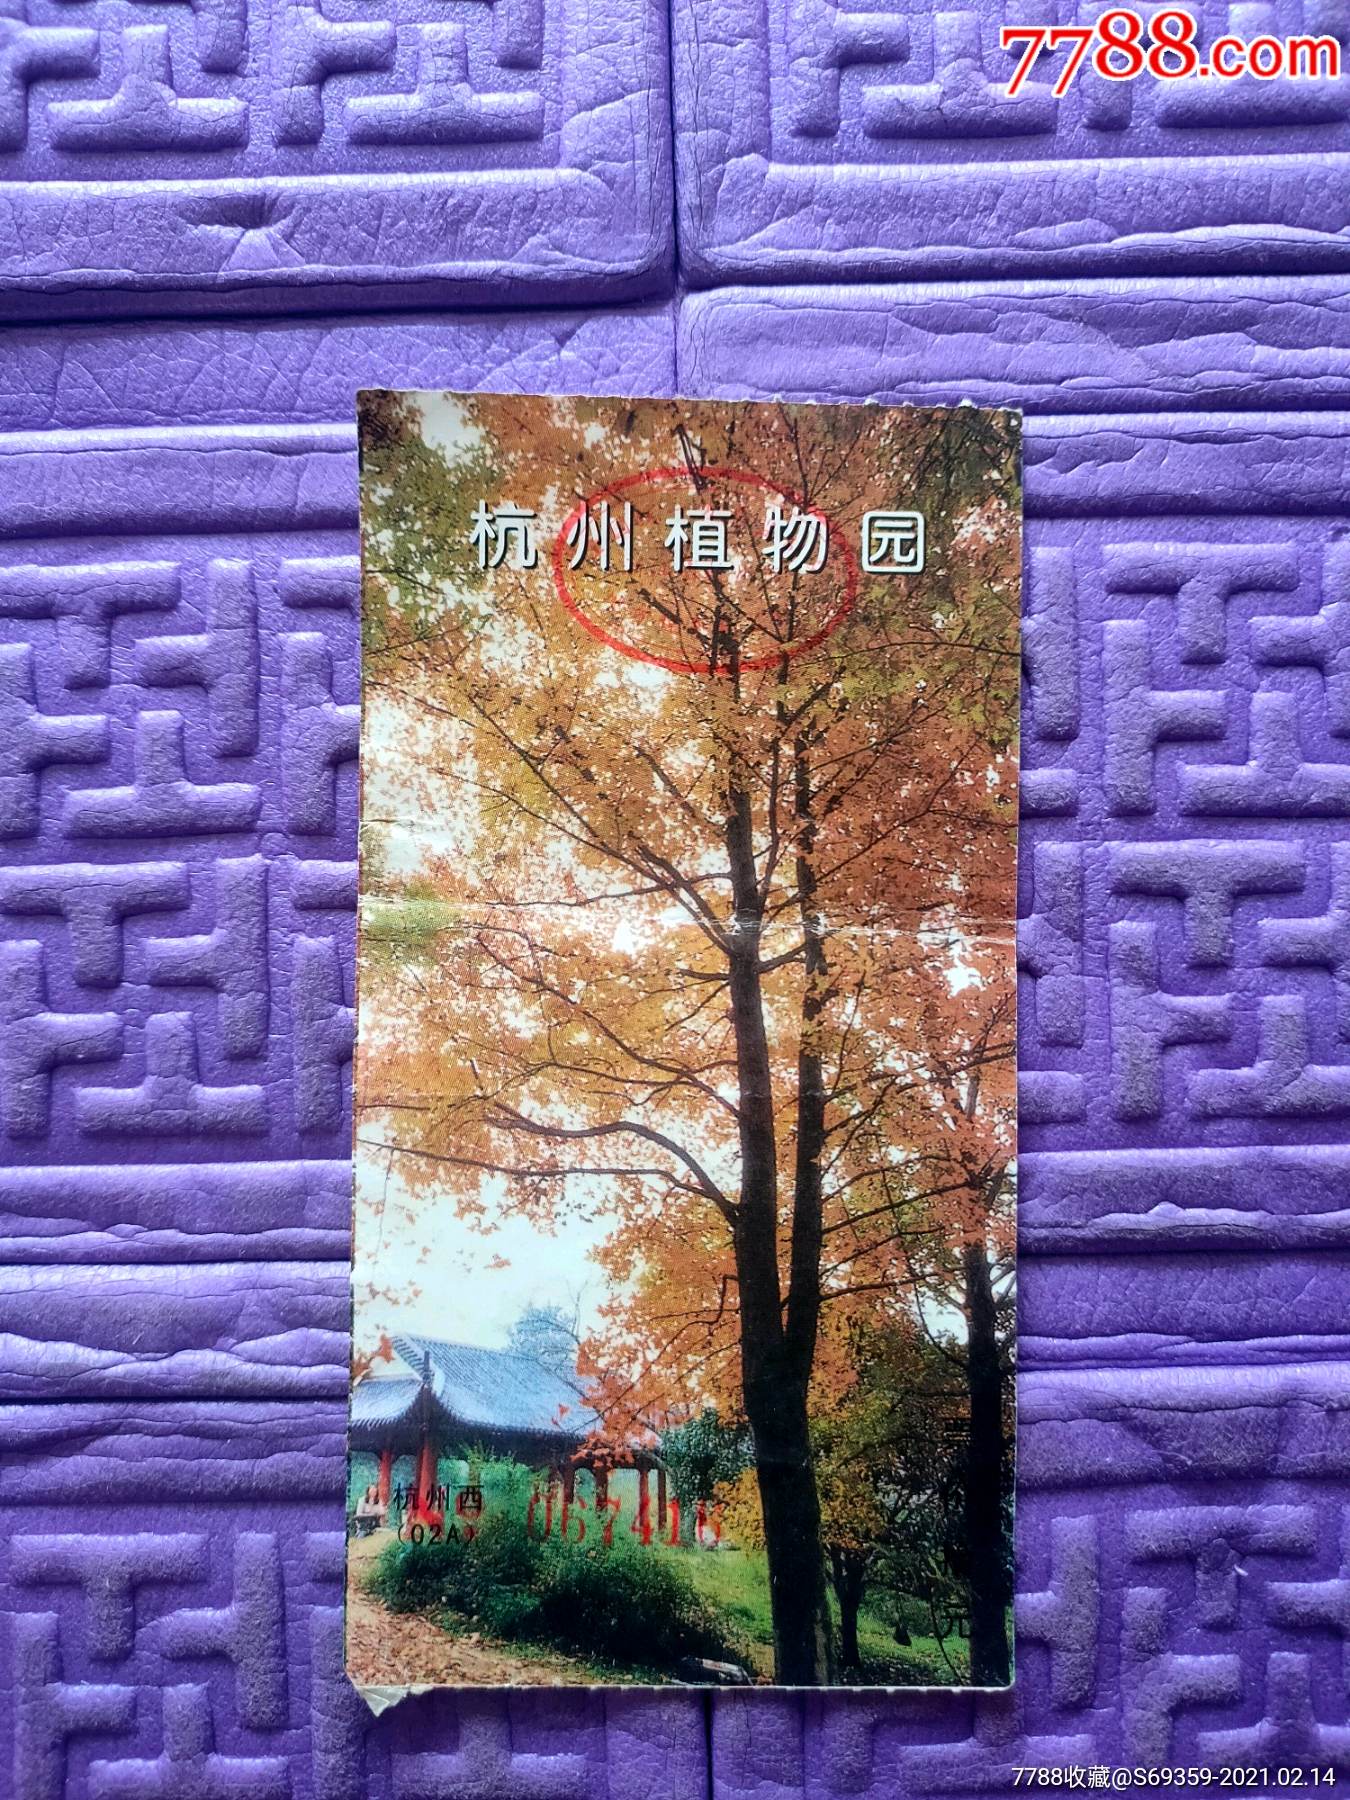 杭州植物园公园卡图片